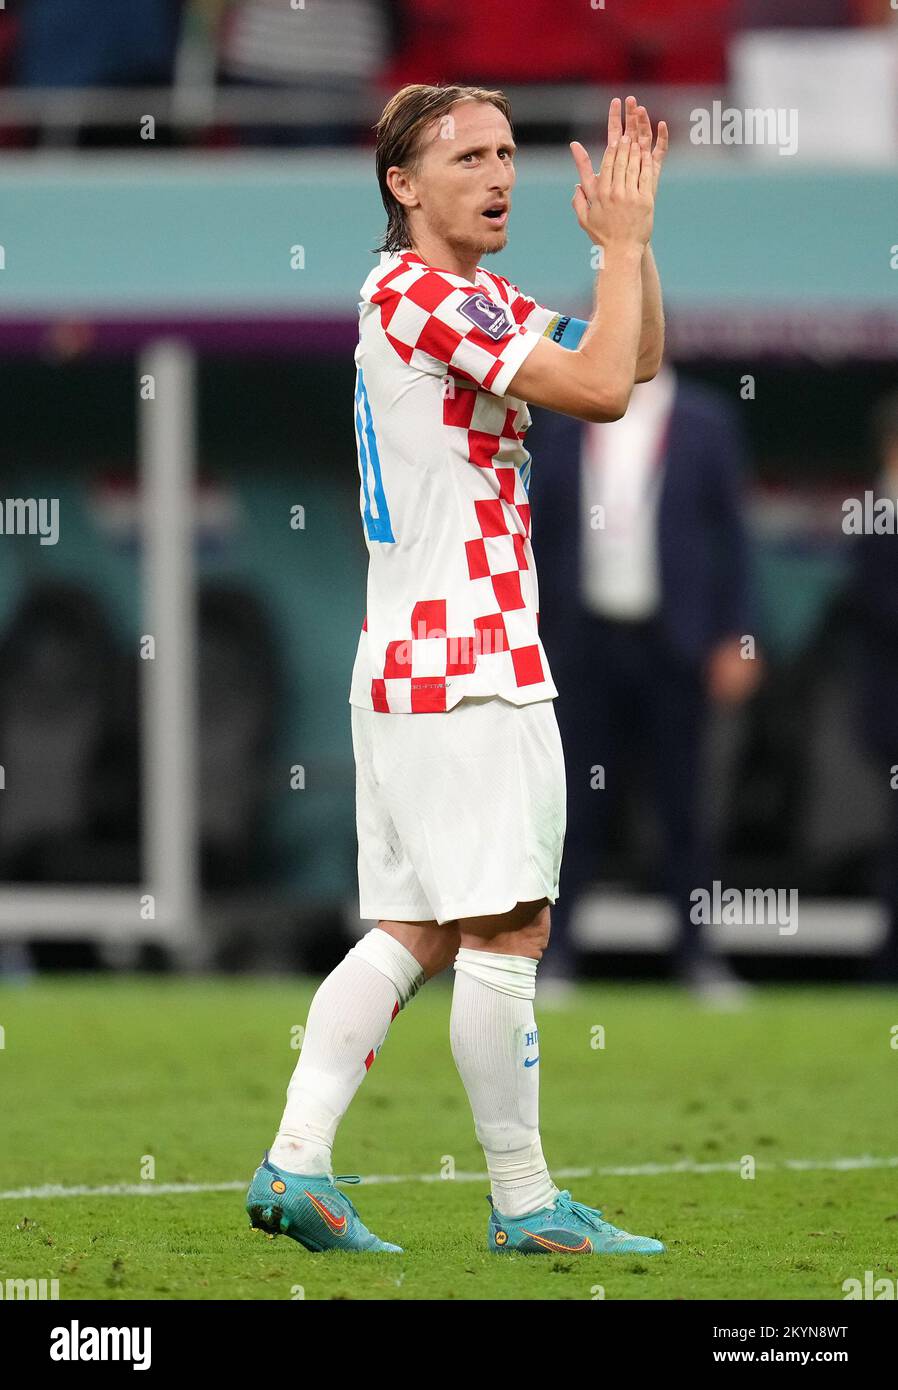 Luka Modric della Croazia dopo il fischio finale durante la partita di Coppa del mondo FIFA Group F allo stadio Ahmad Bin Ali, al Rayyan, Qatar. Data immagine: Giovedì 1 dicembre 2022. Foto Stock